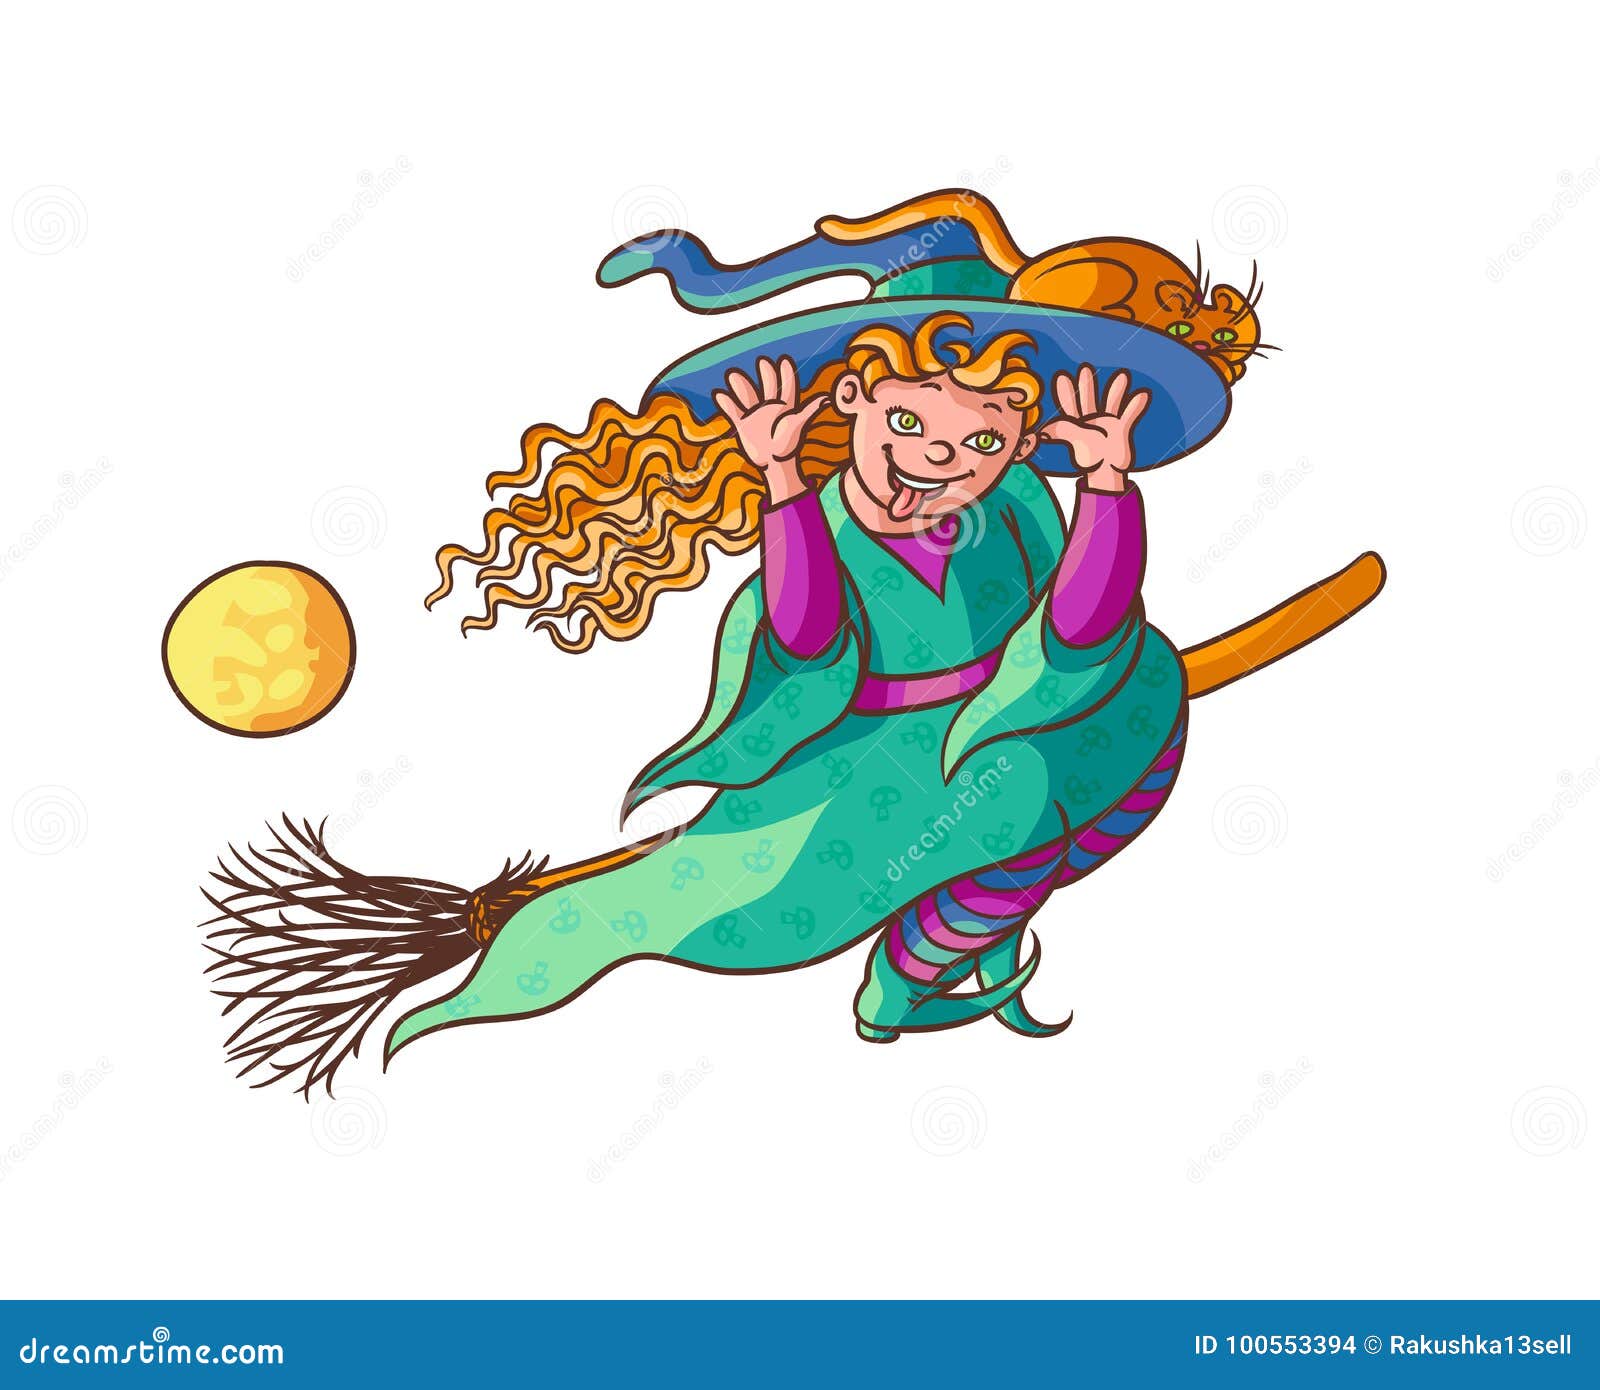 menina com fantasia de bruxa na ilustração em vetor vassoura dos